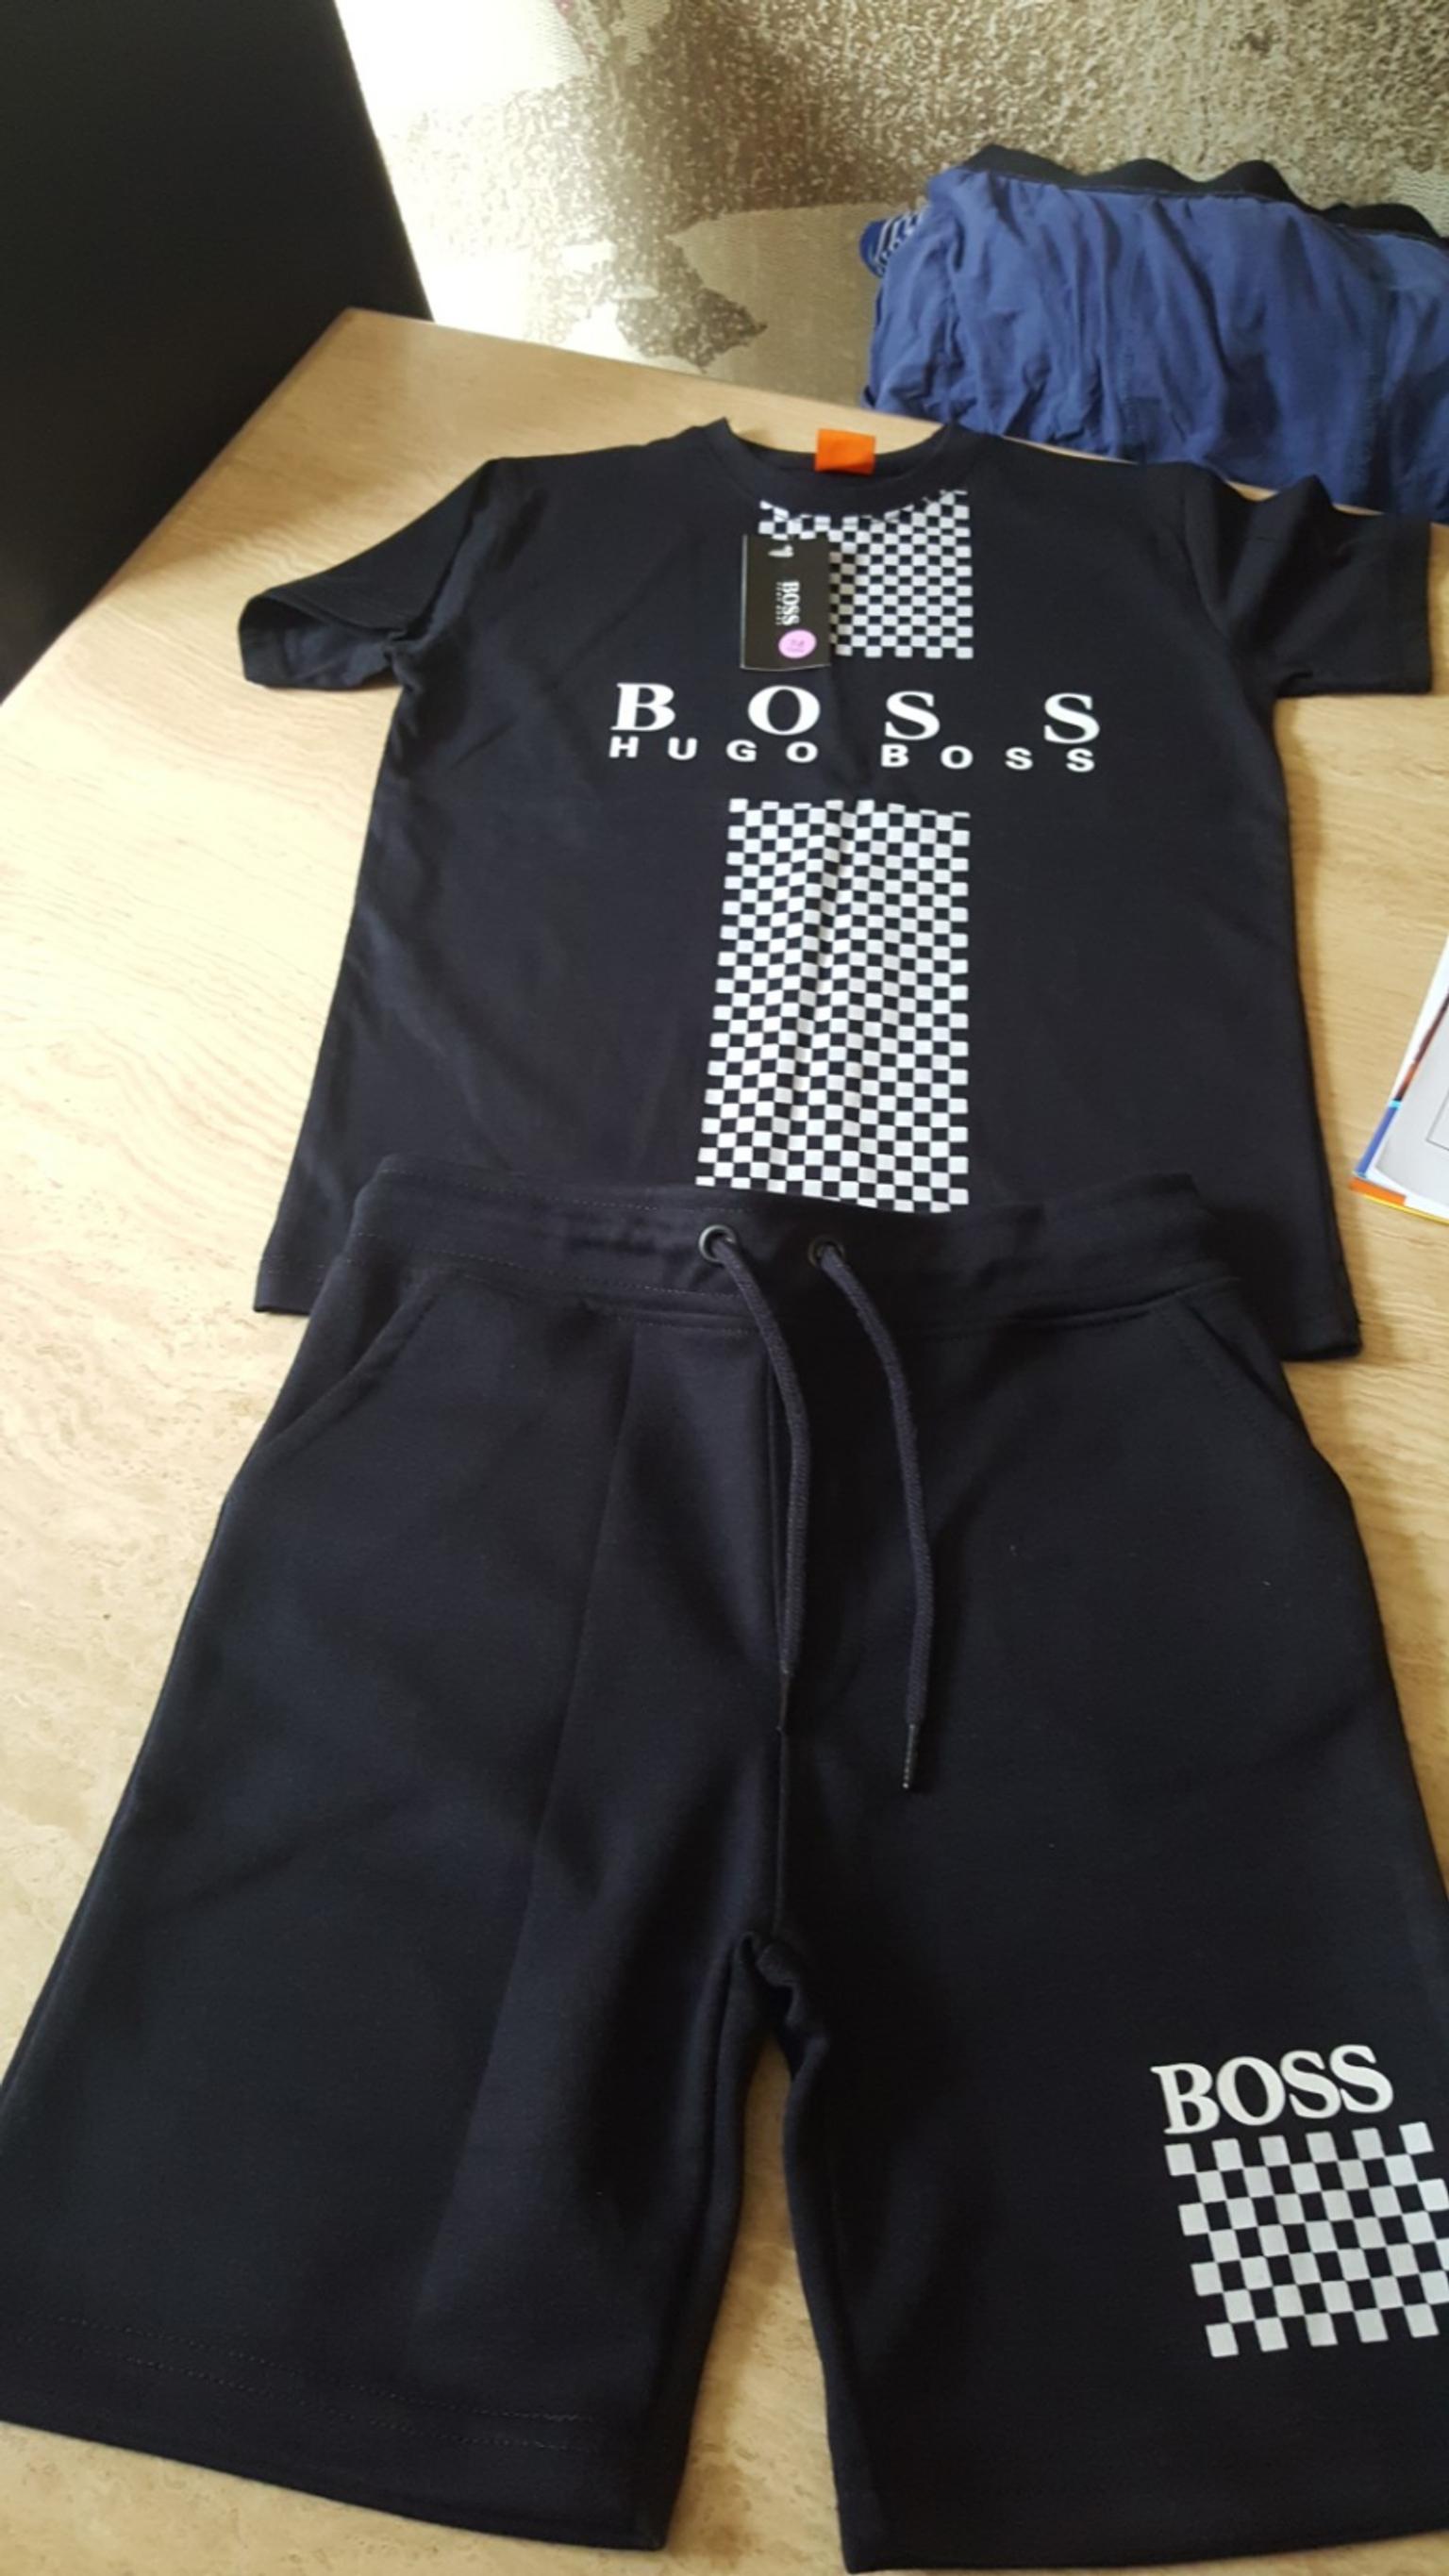 hugo boss t shirt and shorts set